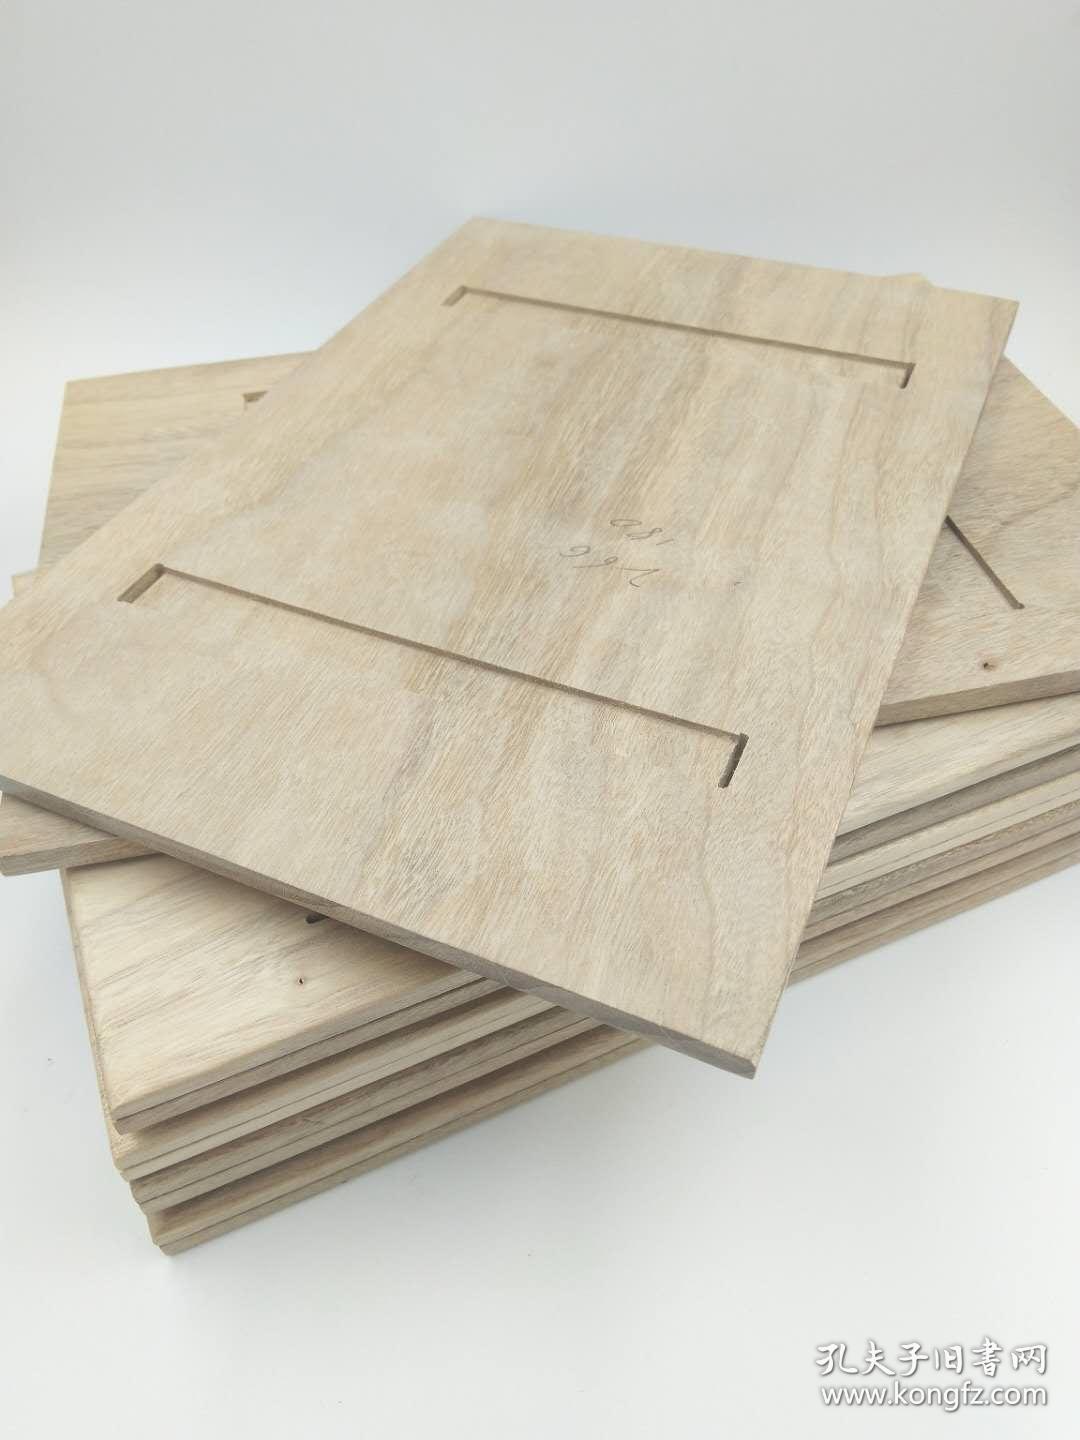 香樟木夹板定做 夹板定制 专业制作 古籍保护夹板 独木独板（非进口山樟拼接板） 精工细作  厚度大小可定做 可刻字喷漆做旧，只有被模仿从未被超越。